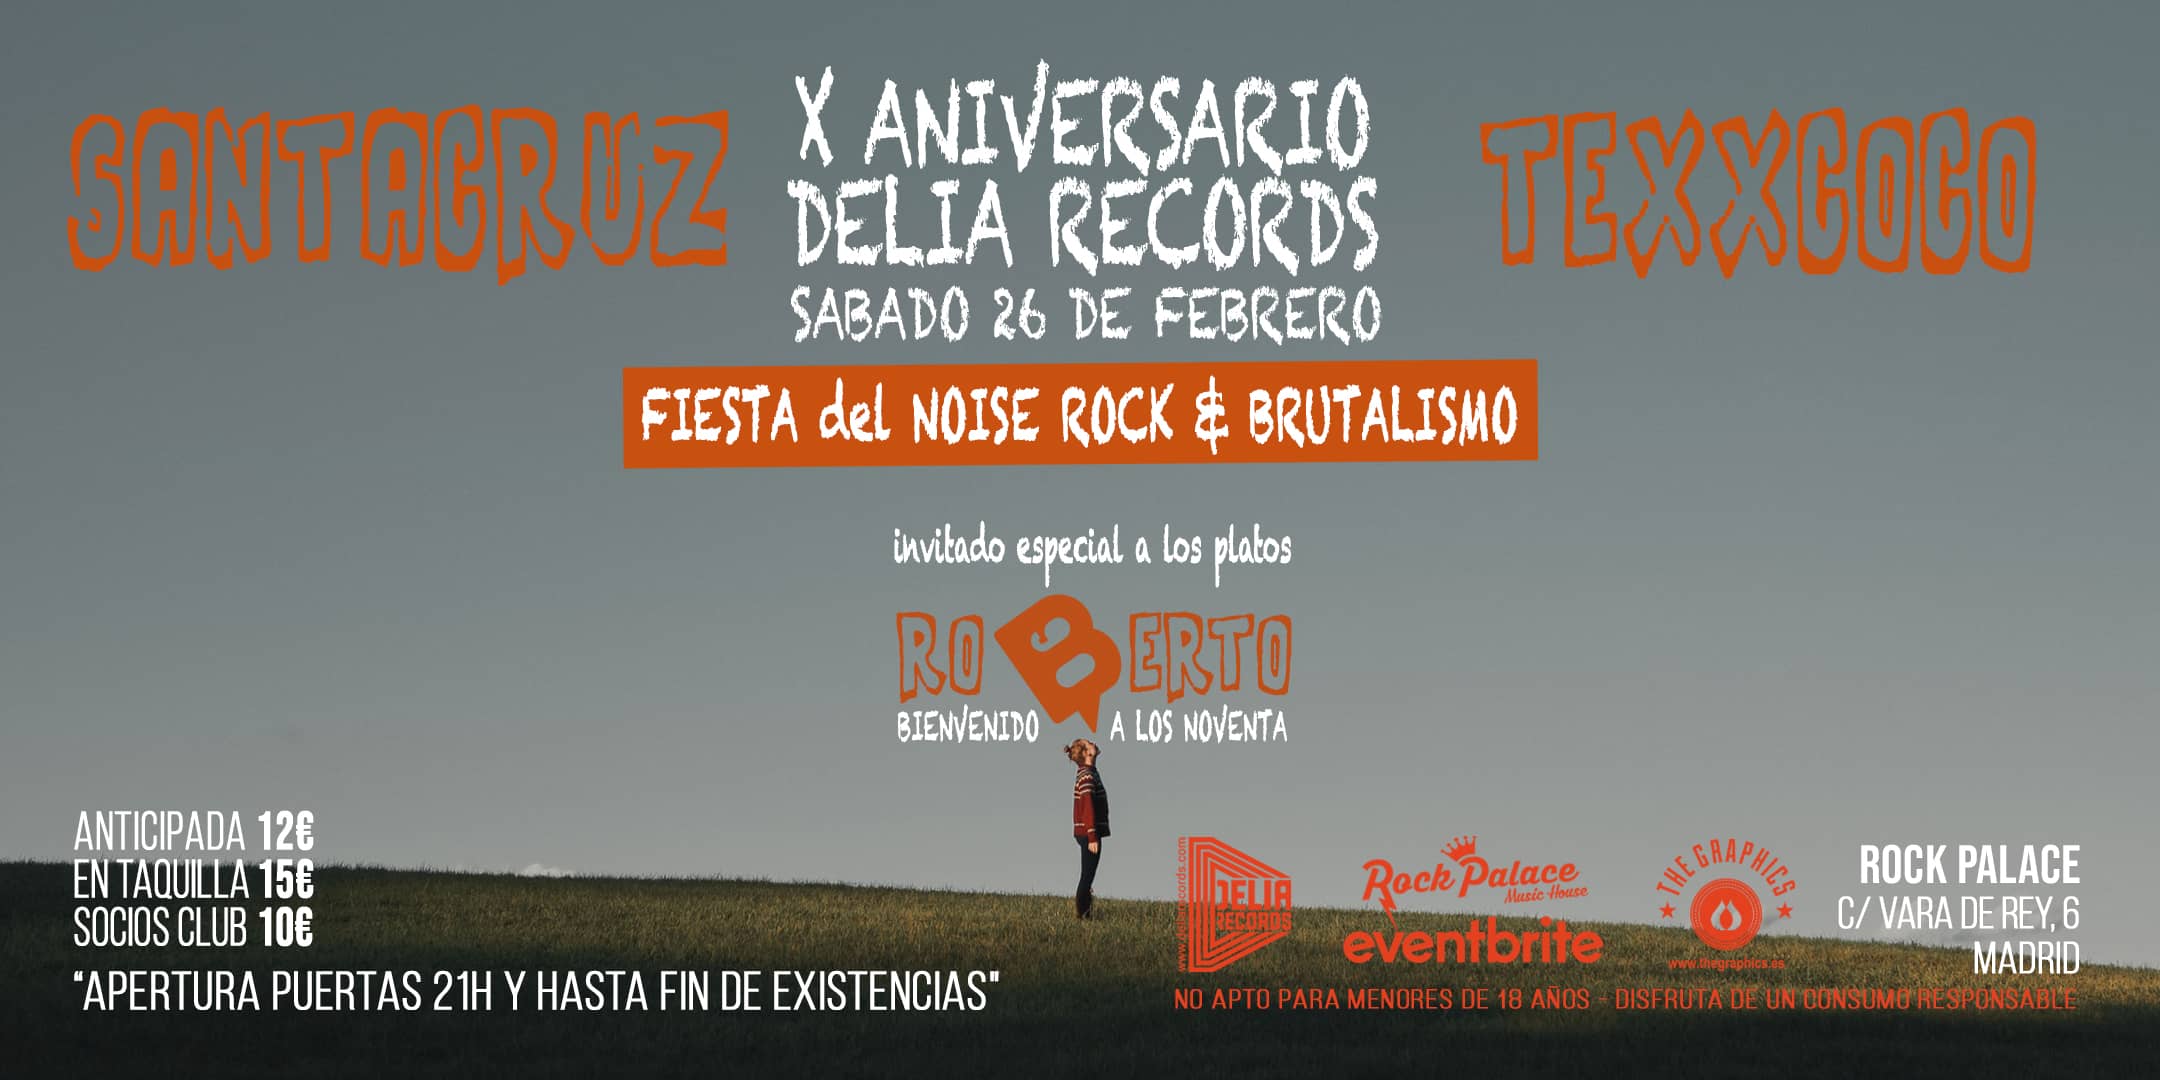 X Aniversario Delia Records [Fiesta del NOISE ROCK & BRUTALISMO en Madrid @ Rock Palace] Texxcoco & Santacruz